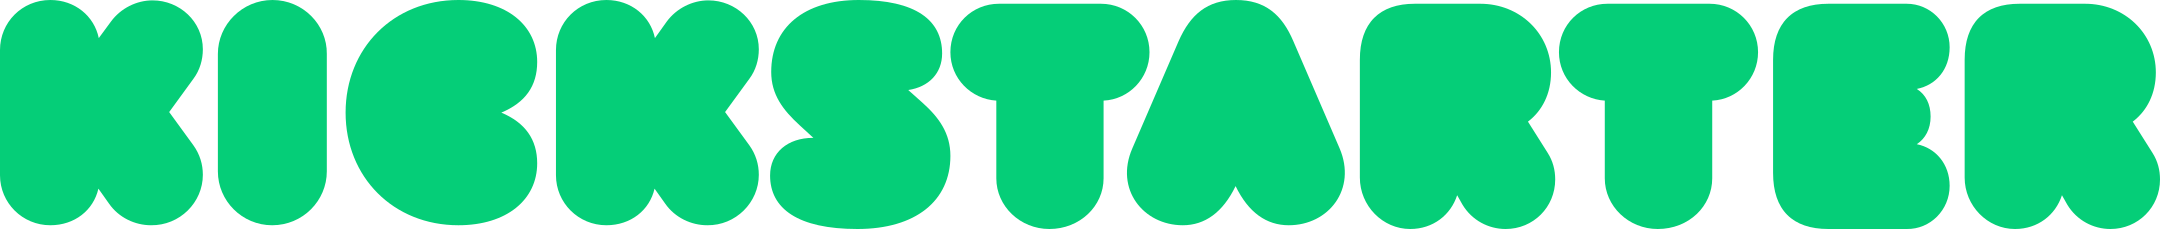 Kickstarter Logo.